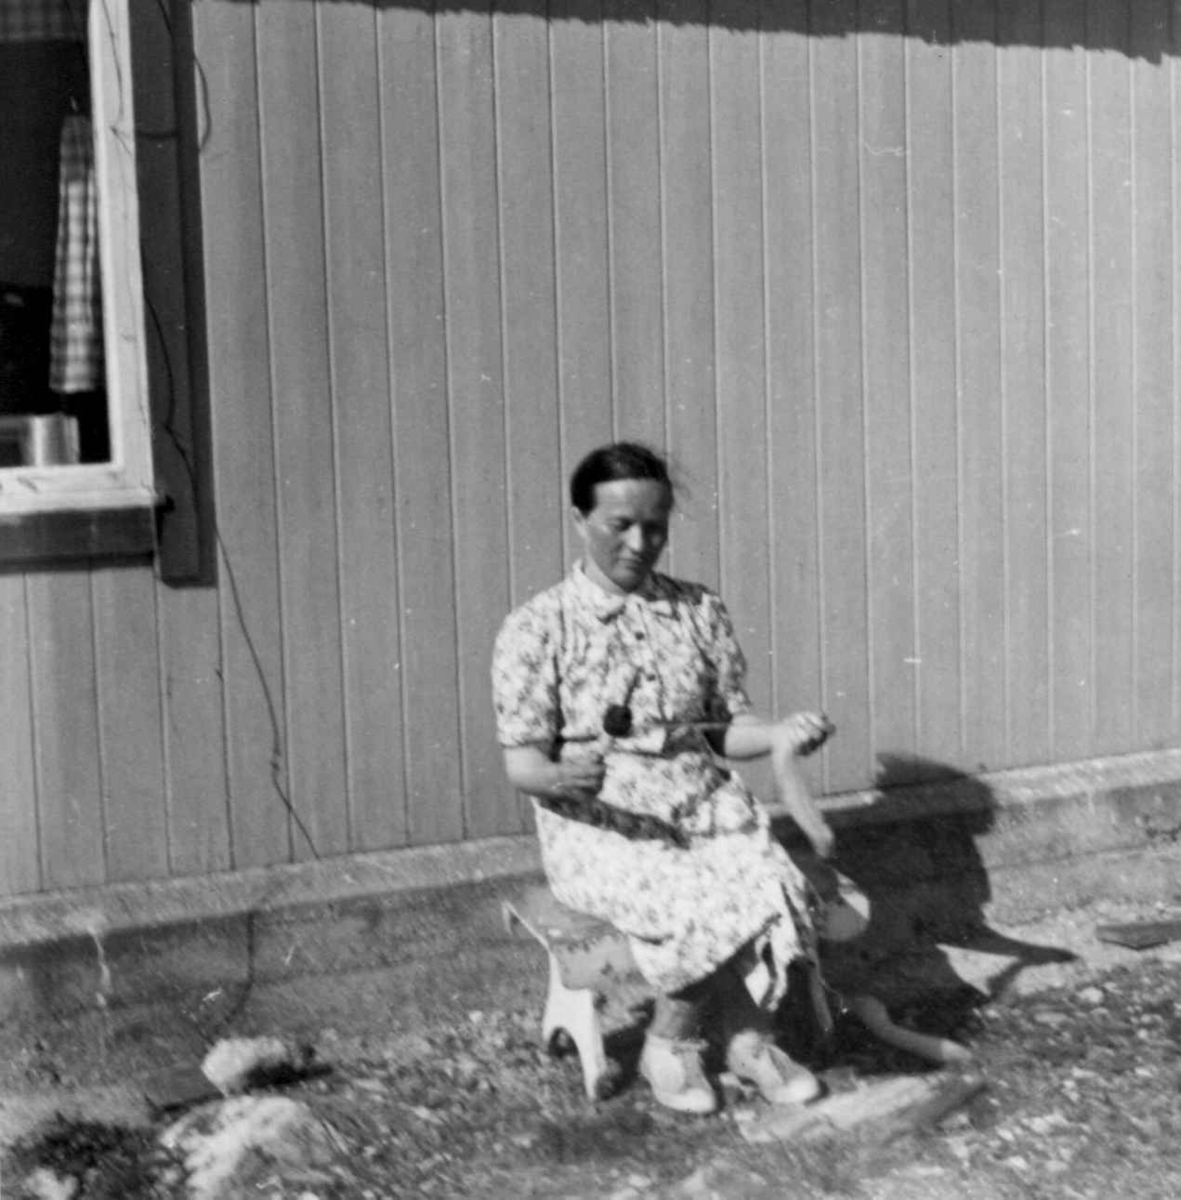 Berta Hansen demonstrerer spinning med håndtein. Langfjordnes / Goalsevuohppi, Gamvik, Finnmark. 1952.